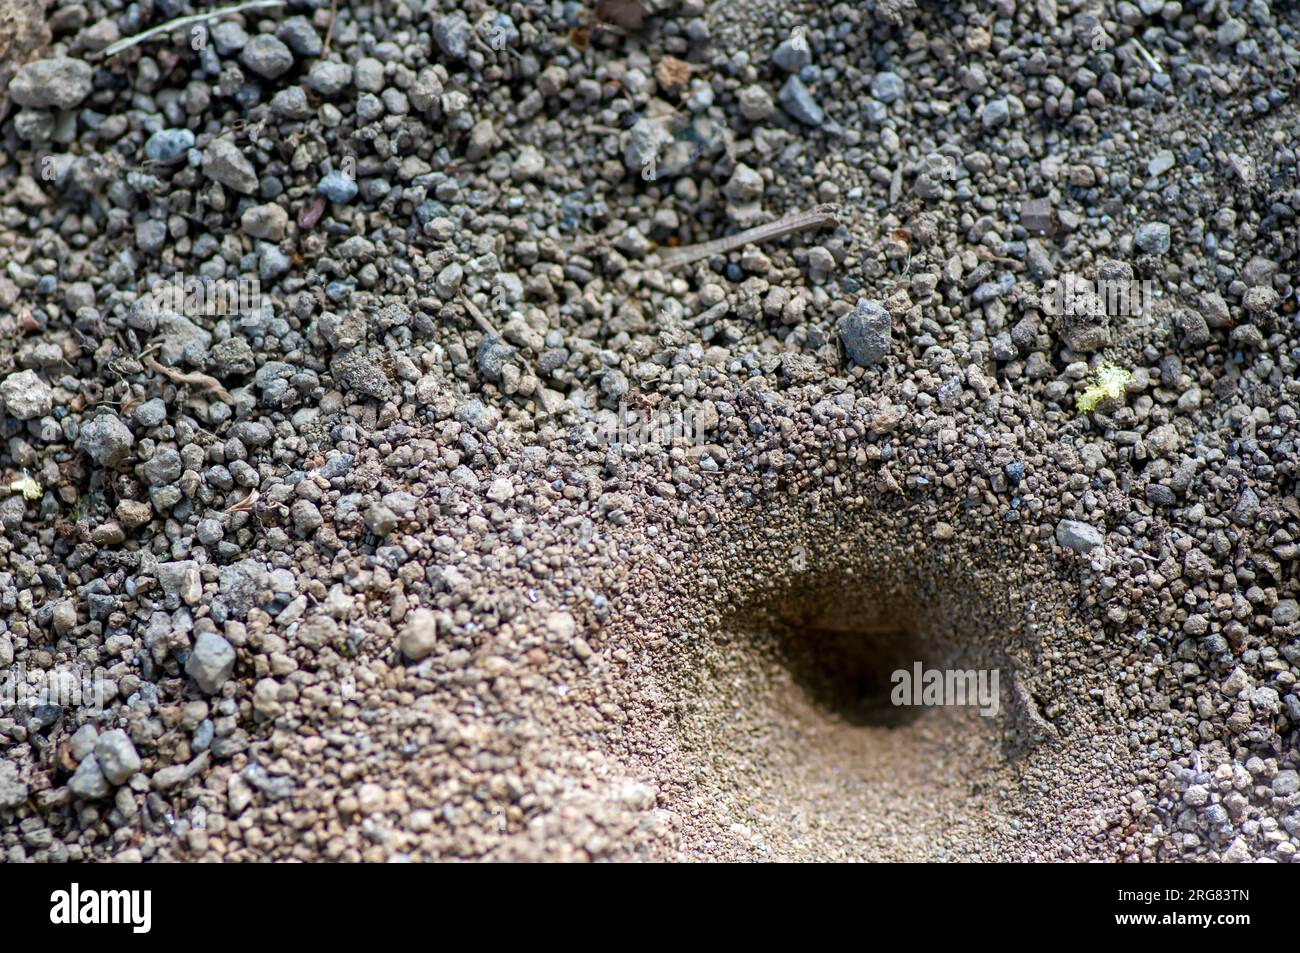 Der Wirbel oder ein Kegelloch auf dem Boden, das Nest von Myrmeleon formicarius Larven, undur-undur, Antliontier. Stockfoto